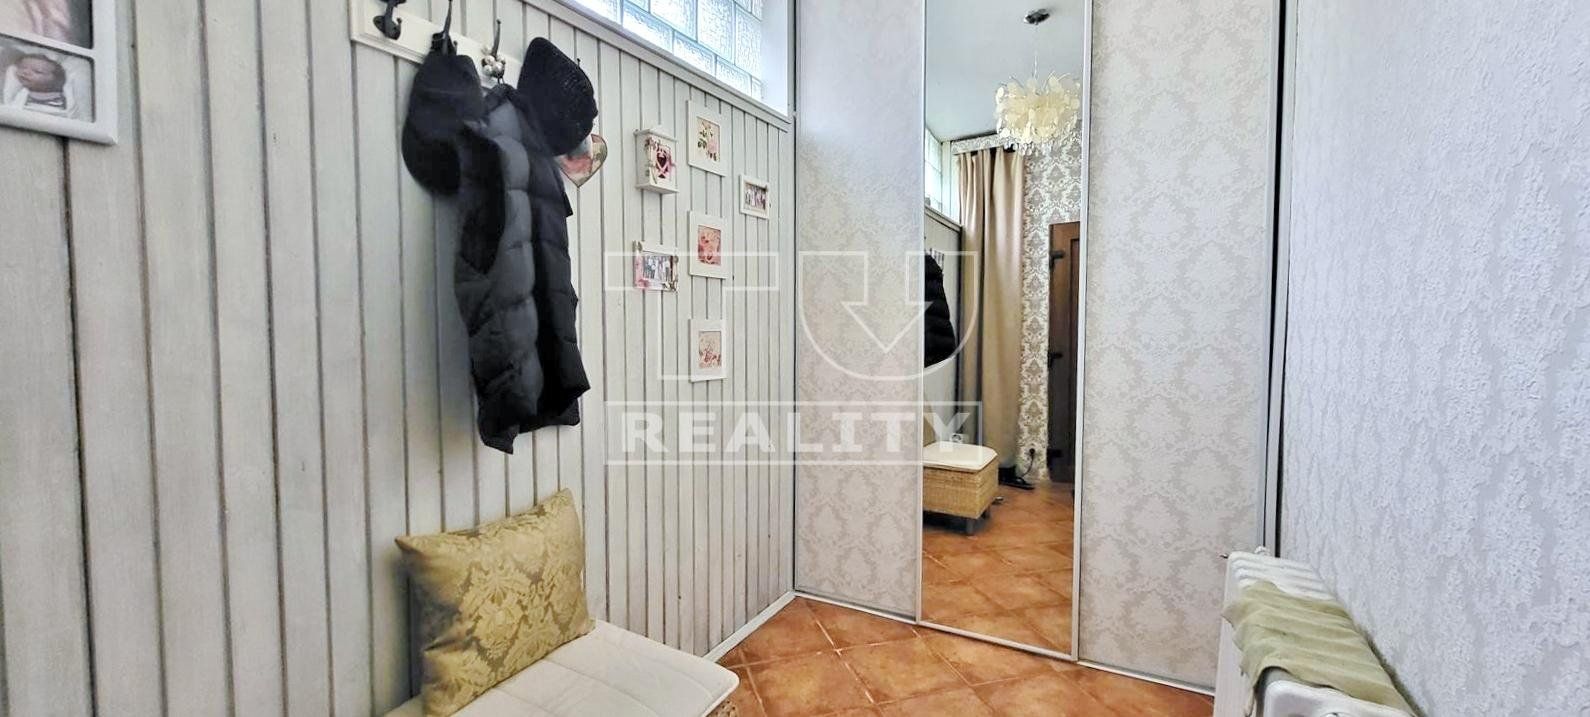 EXKLUZÍVNA chata v MODRE: Ideálny domov pre celoročné bývanie!, 1.058 m2